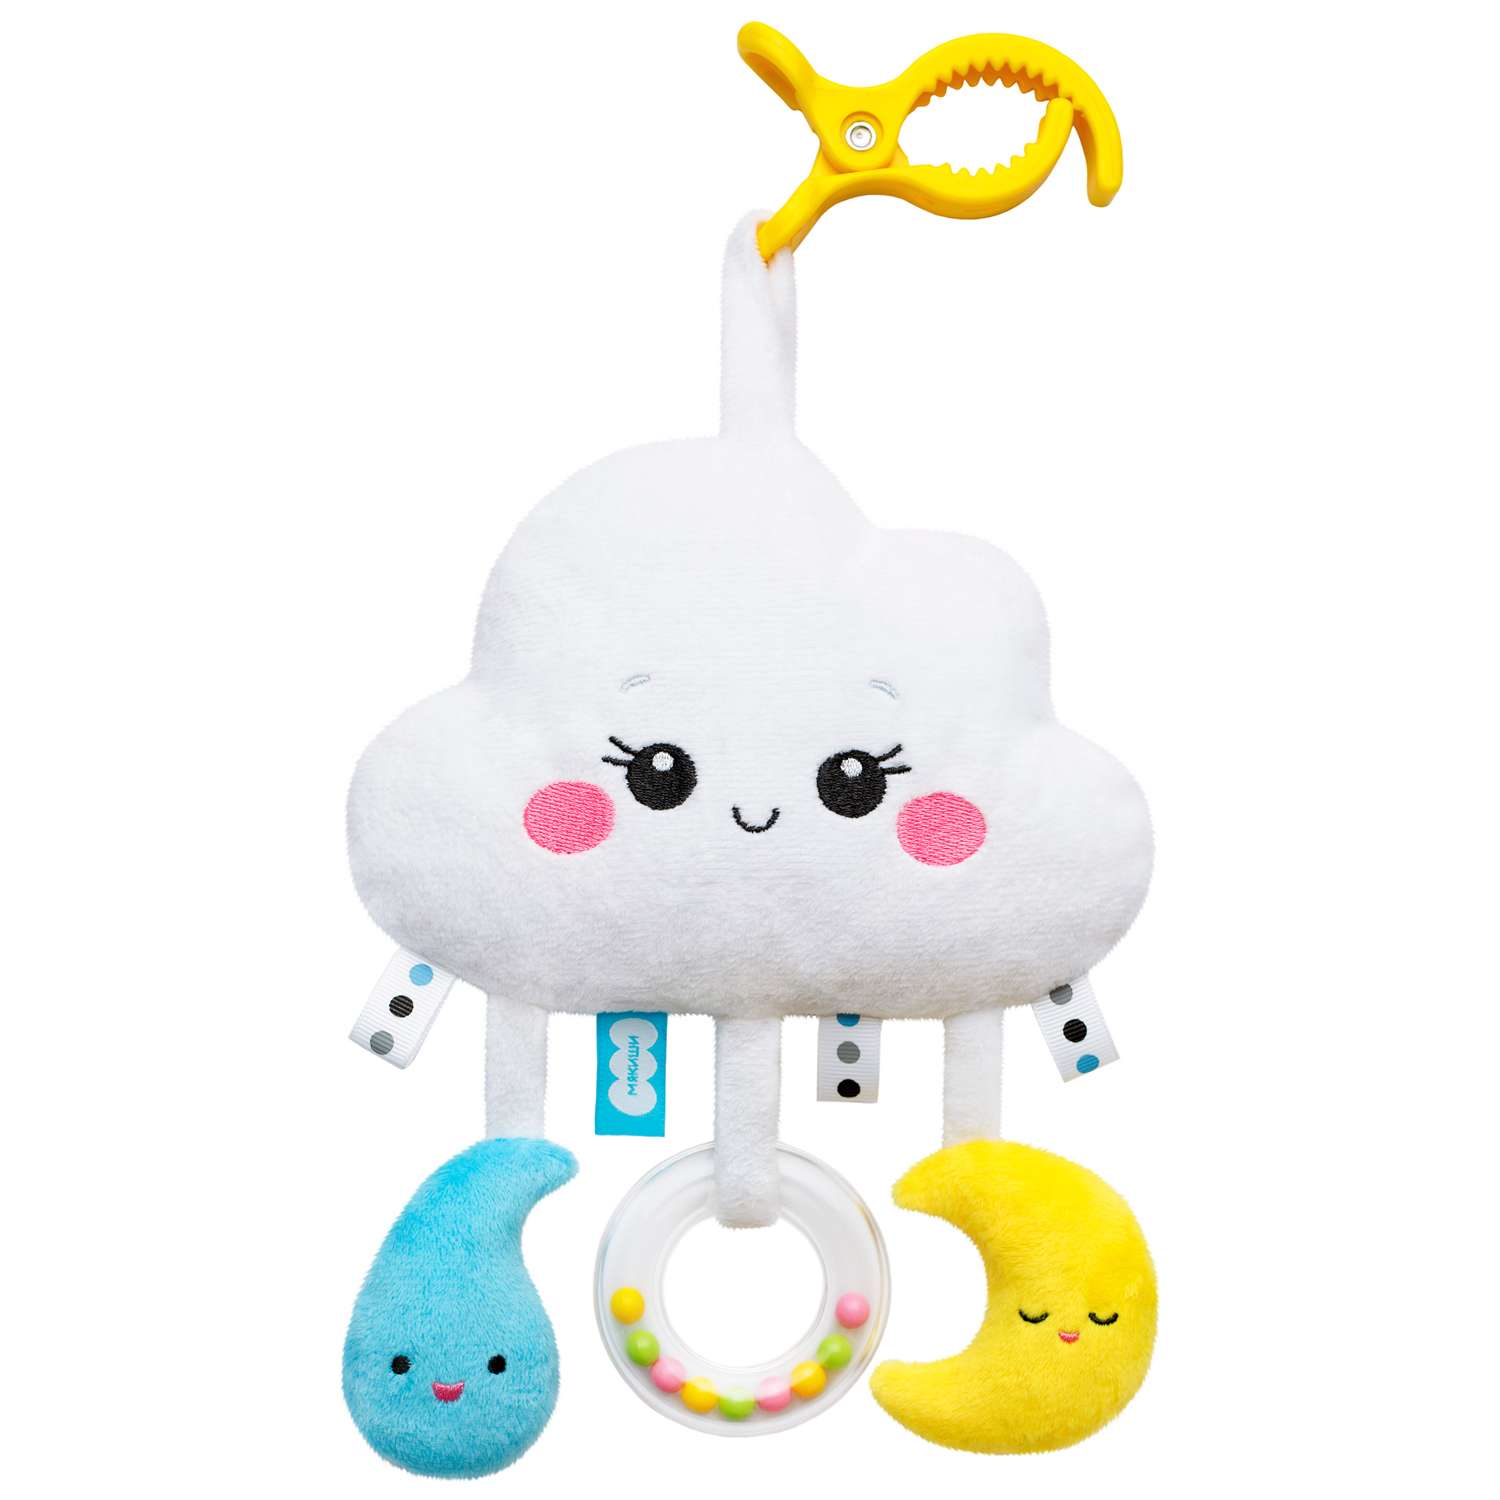 Подвеска Мякиши Развивающая детская игрушка погремушка Облачко на кроватку подарок для новорожденных - фото 1